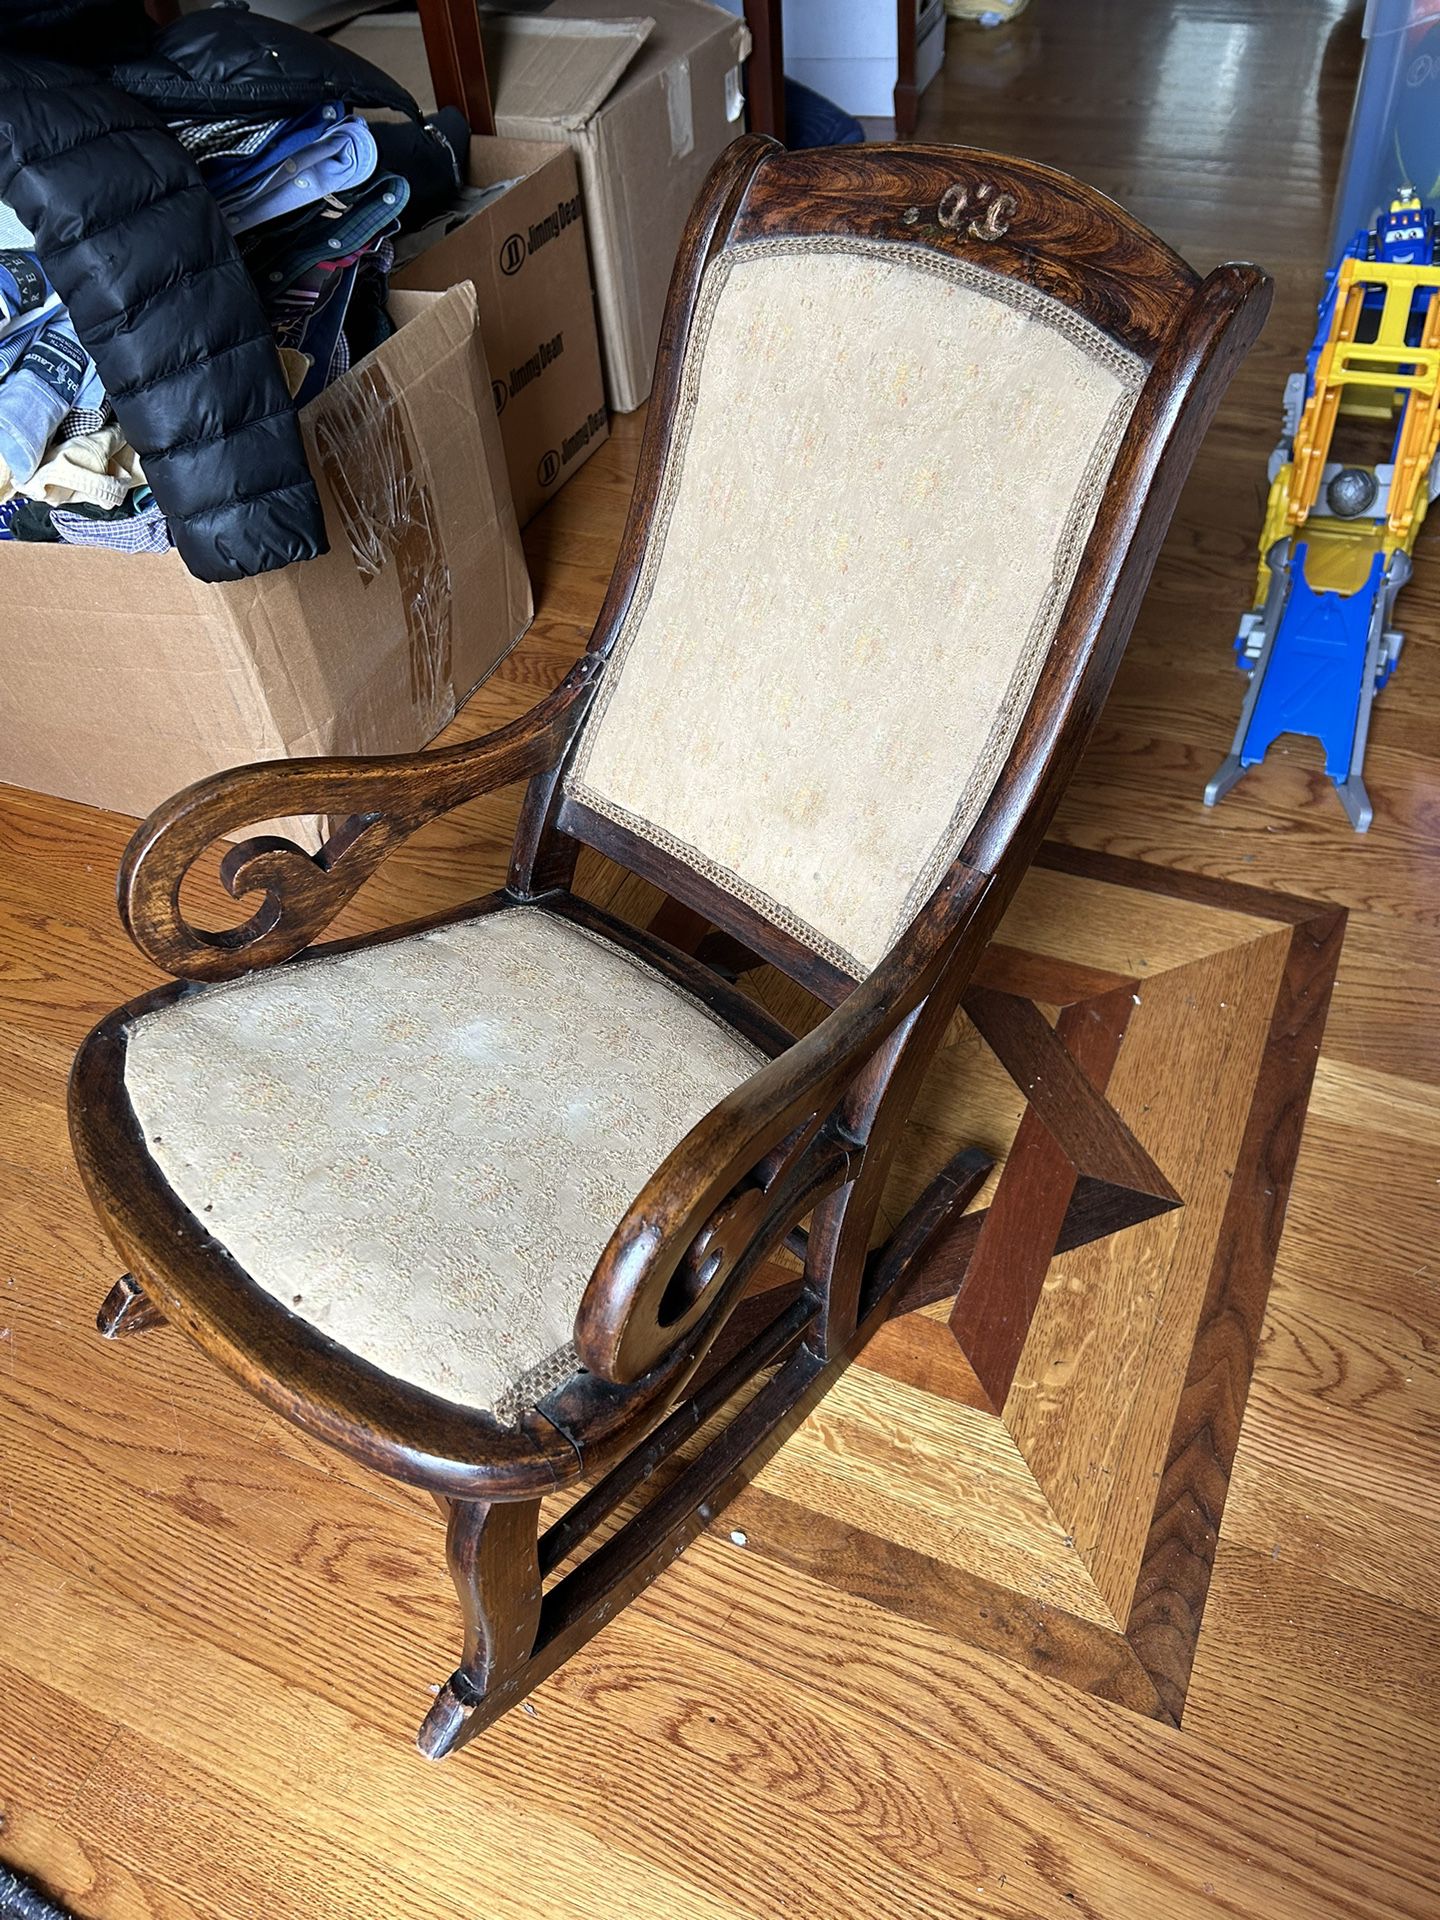 Child’s Antique Rocking Chair